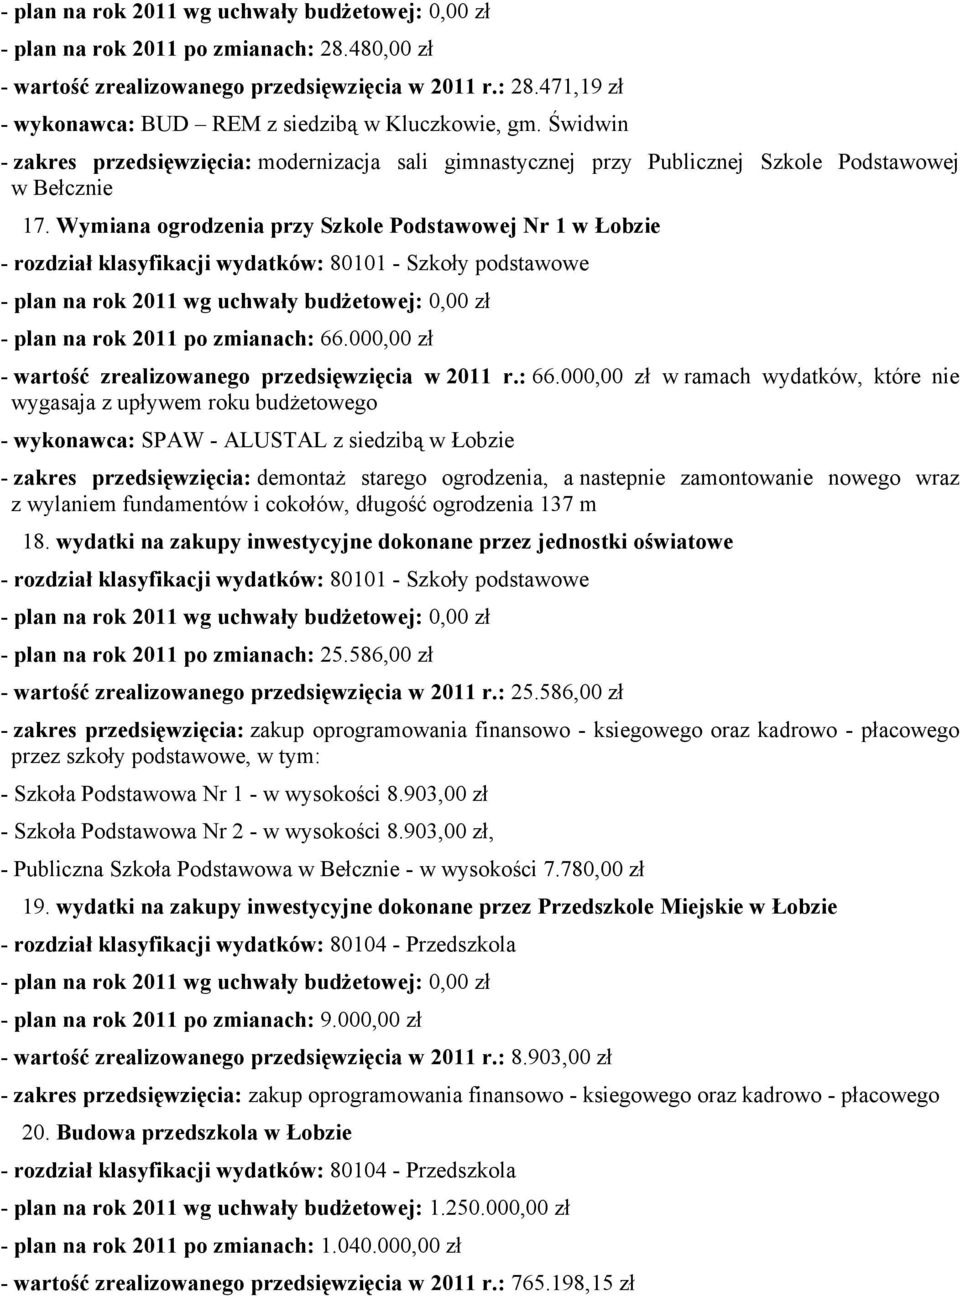 Wymiana ogrodenia pry Skole Podstawowej Nr 1 w Łobie - rodiał klasyfikacji wydatków: 80101 - Skoły podstawowe - rok 2011 wg uchwały budżetowej: 0,00 ł - rok 2011 po mianach: 66.